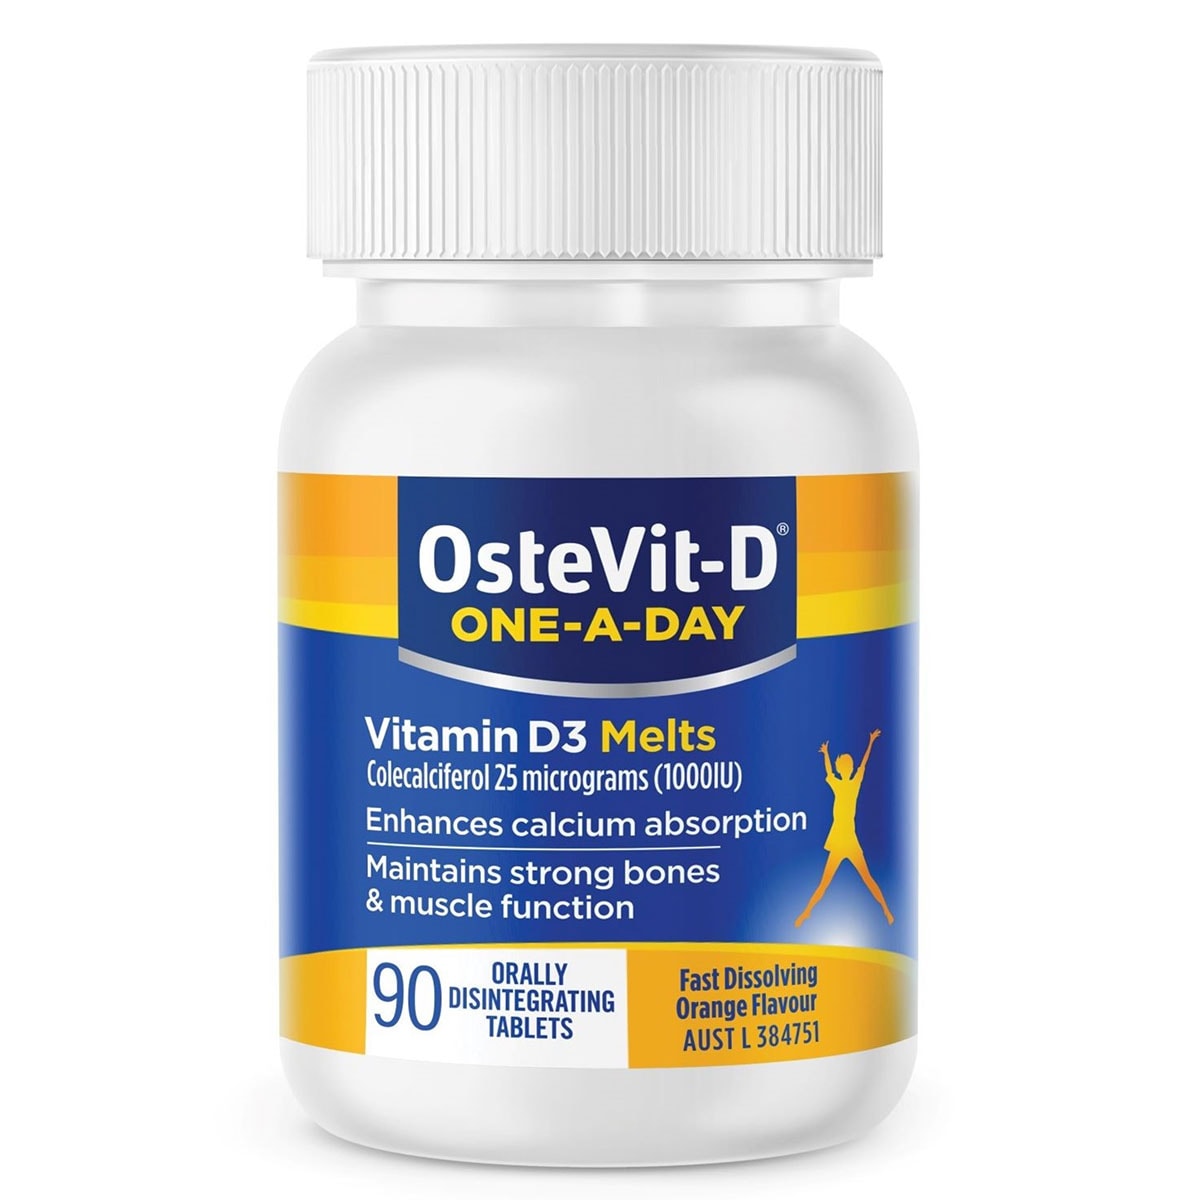 OsteVit-D One-a-Day Vitamin D3 Melts 90 Tablets